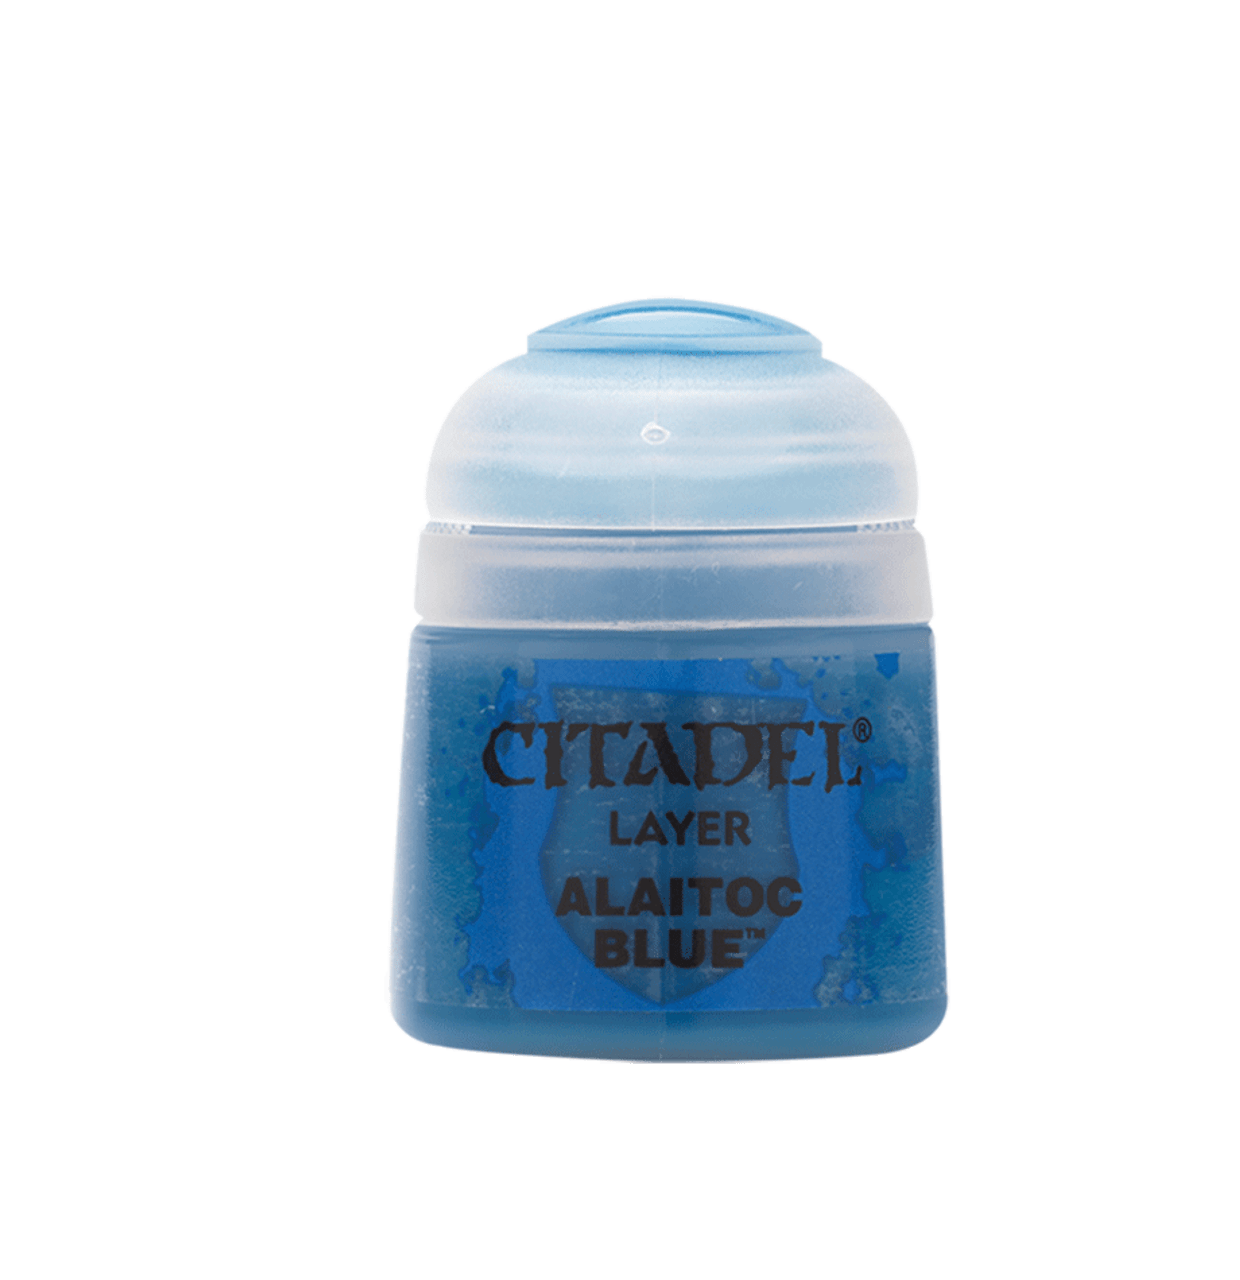 Alaitoc Blue Layer Paint